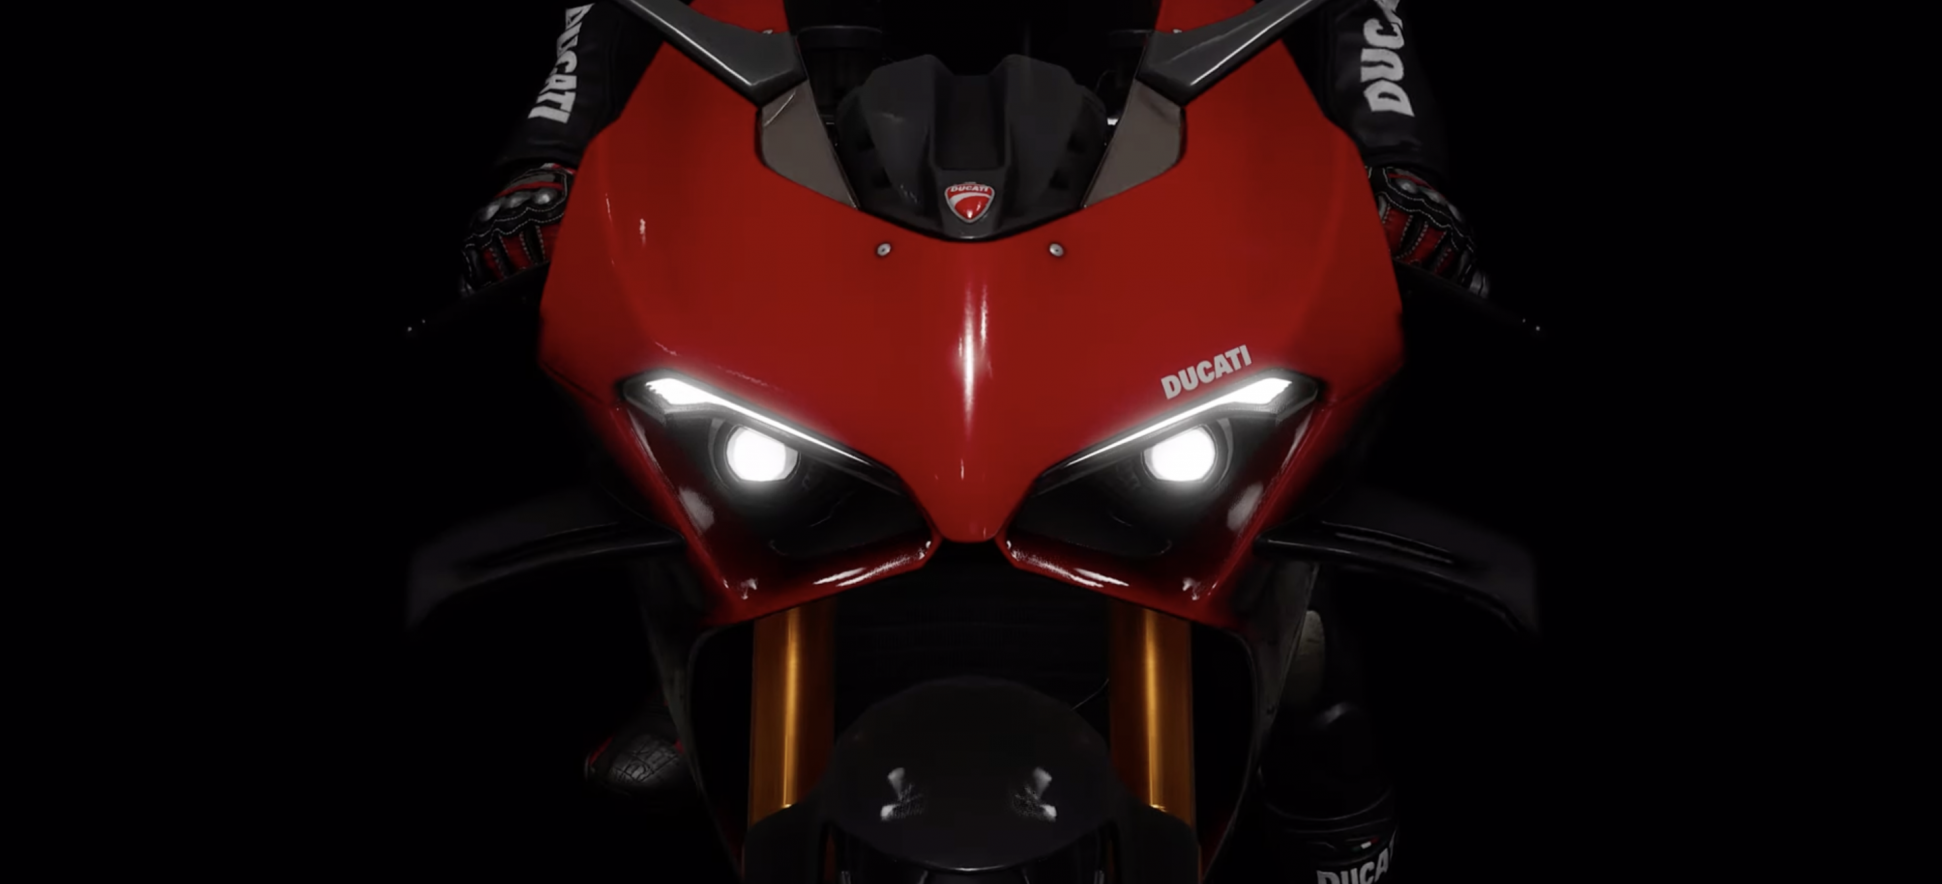 Ошеломительное сотрудничество PUBG и Ducati: трейлер захватывает дух!